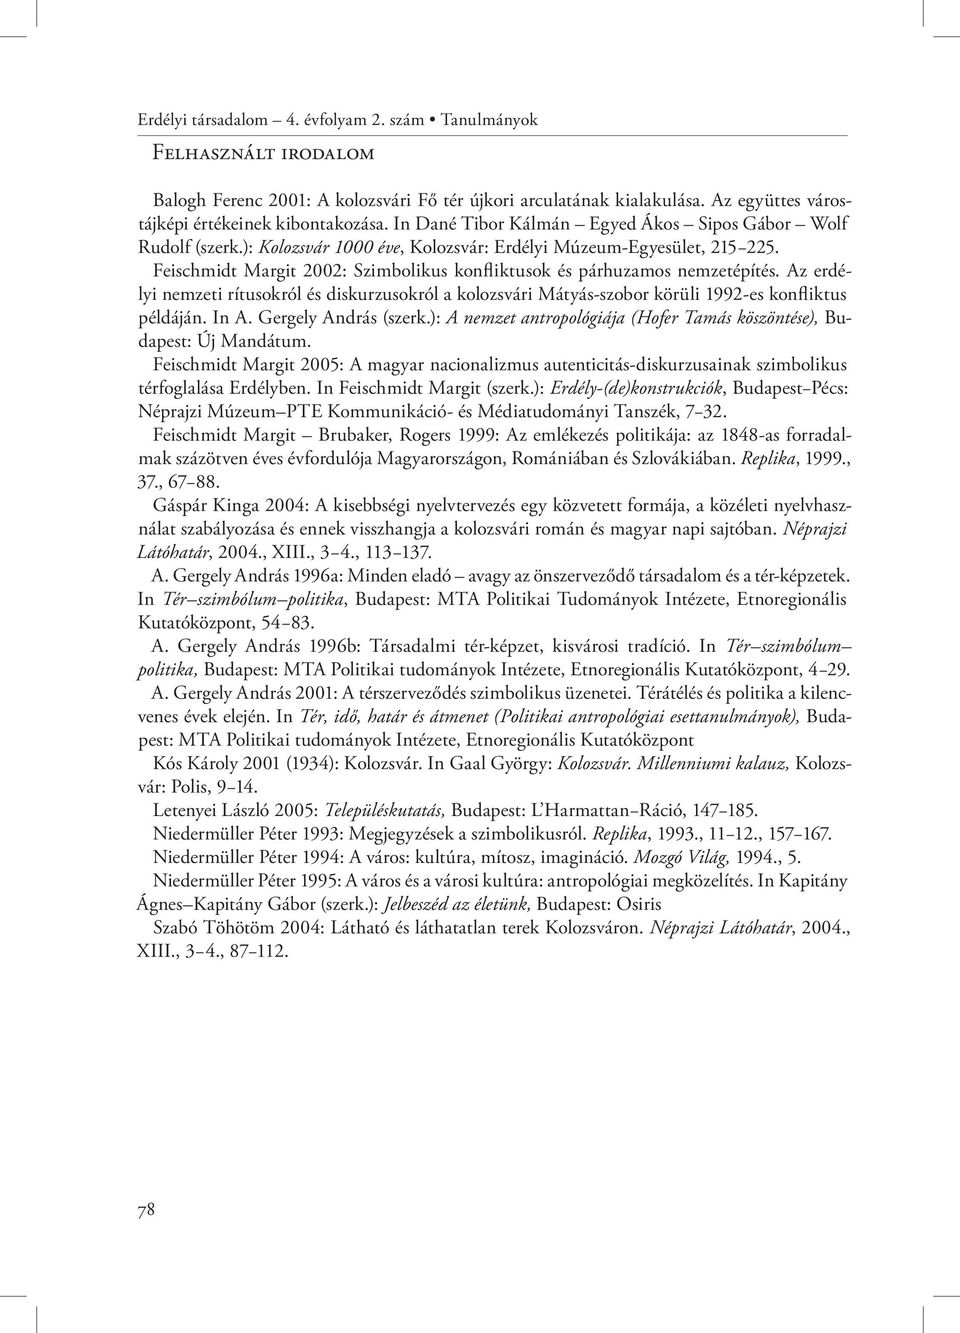 Feischmidt Margit 2002: Szimbolikus konfliktusok és párhuzamos nemzetépítés. Az erdélyi nemzeti rítusokról és diskurzusokról a kolozsvári Mátyás-szobor körüli 1992-es konfliktus példáján. In A.